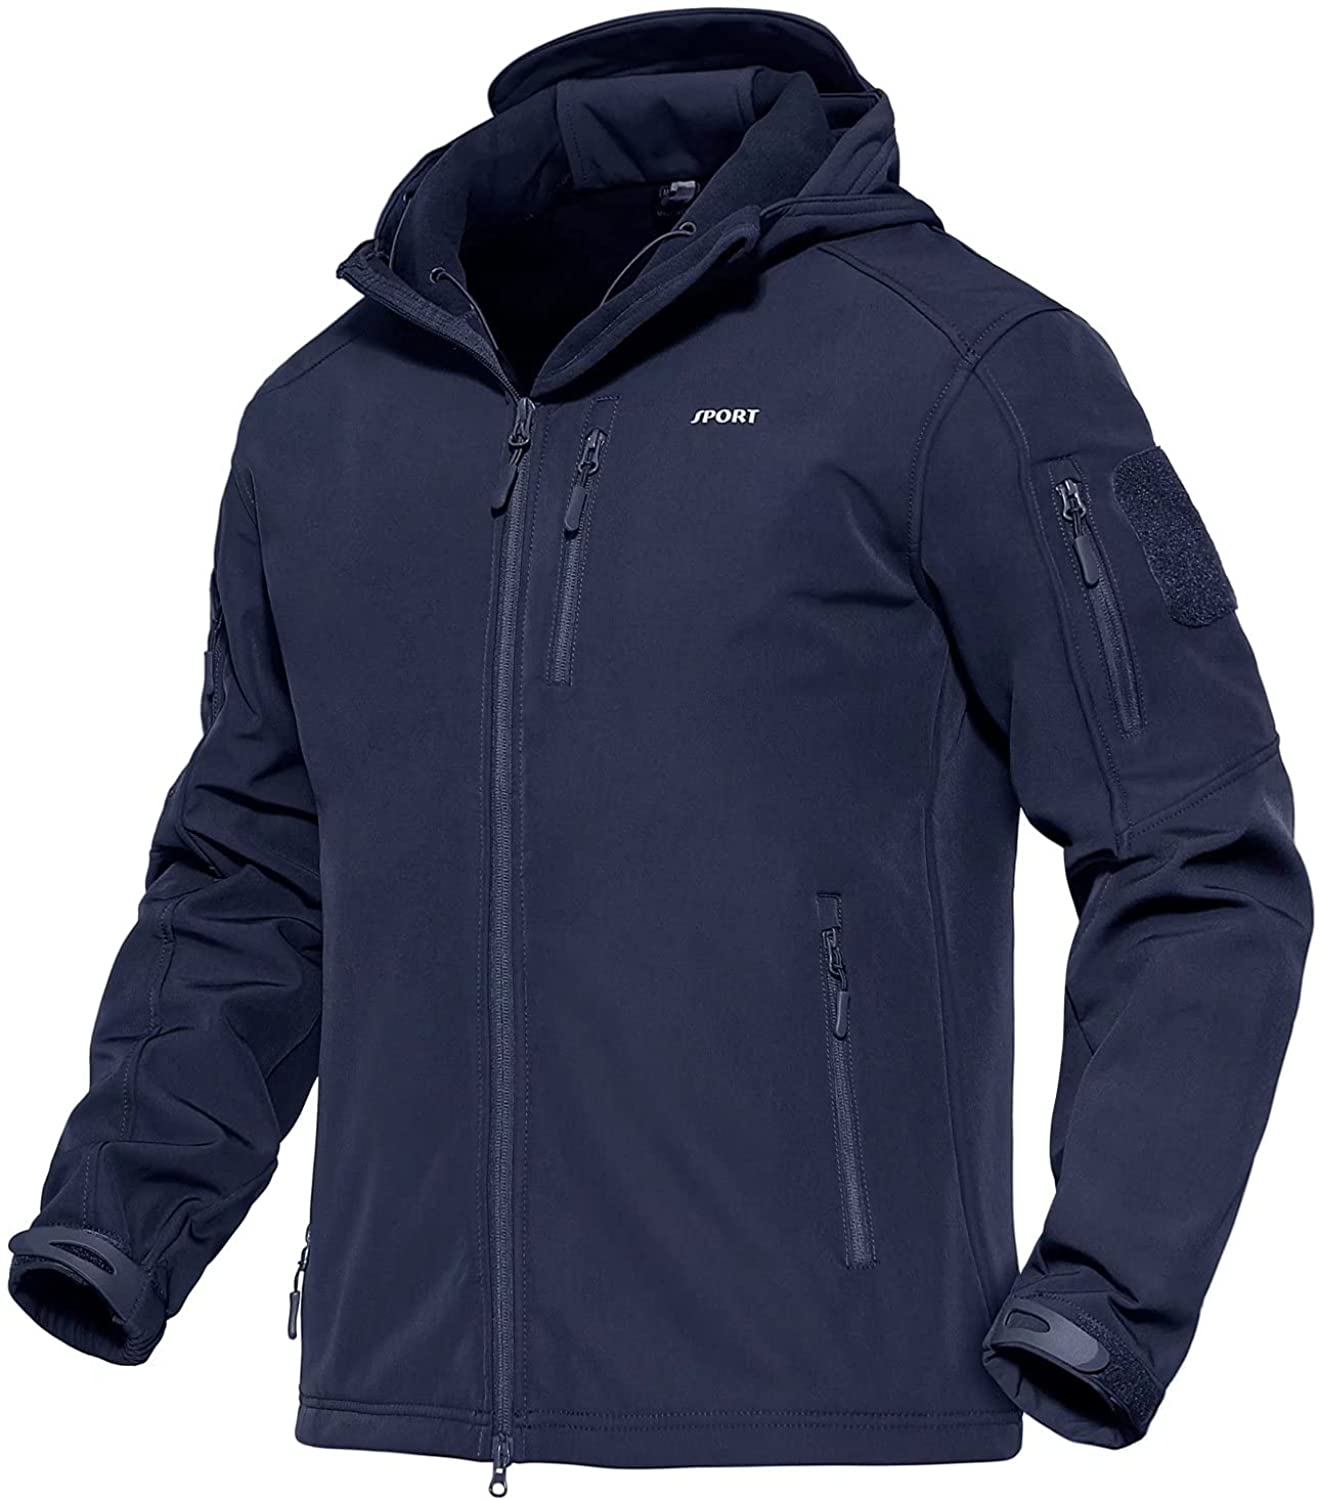 MAGCOMSEN Men's 3-in-1 Winter Ski Jacket with 6 Pockets Fleece Lining Detachable Hood Water Resistant Snowboard Jacket 